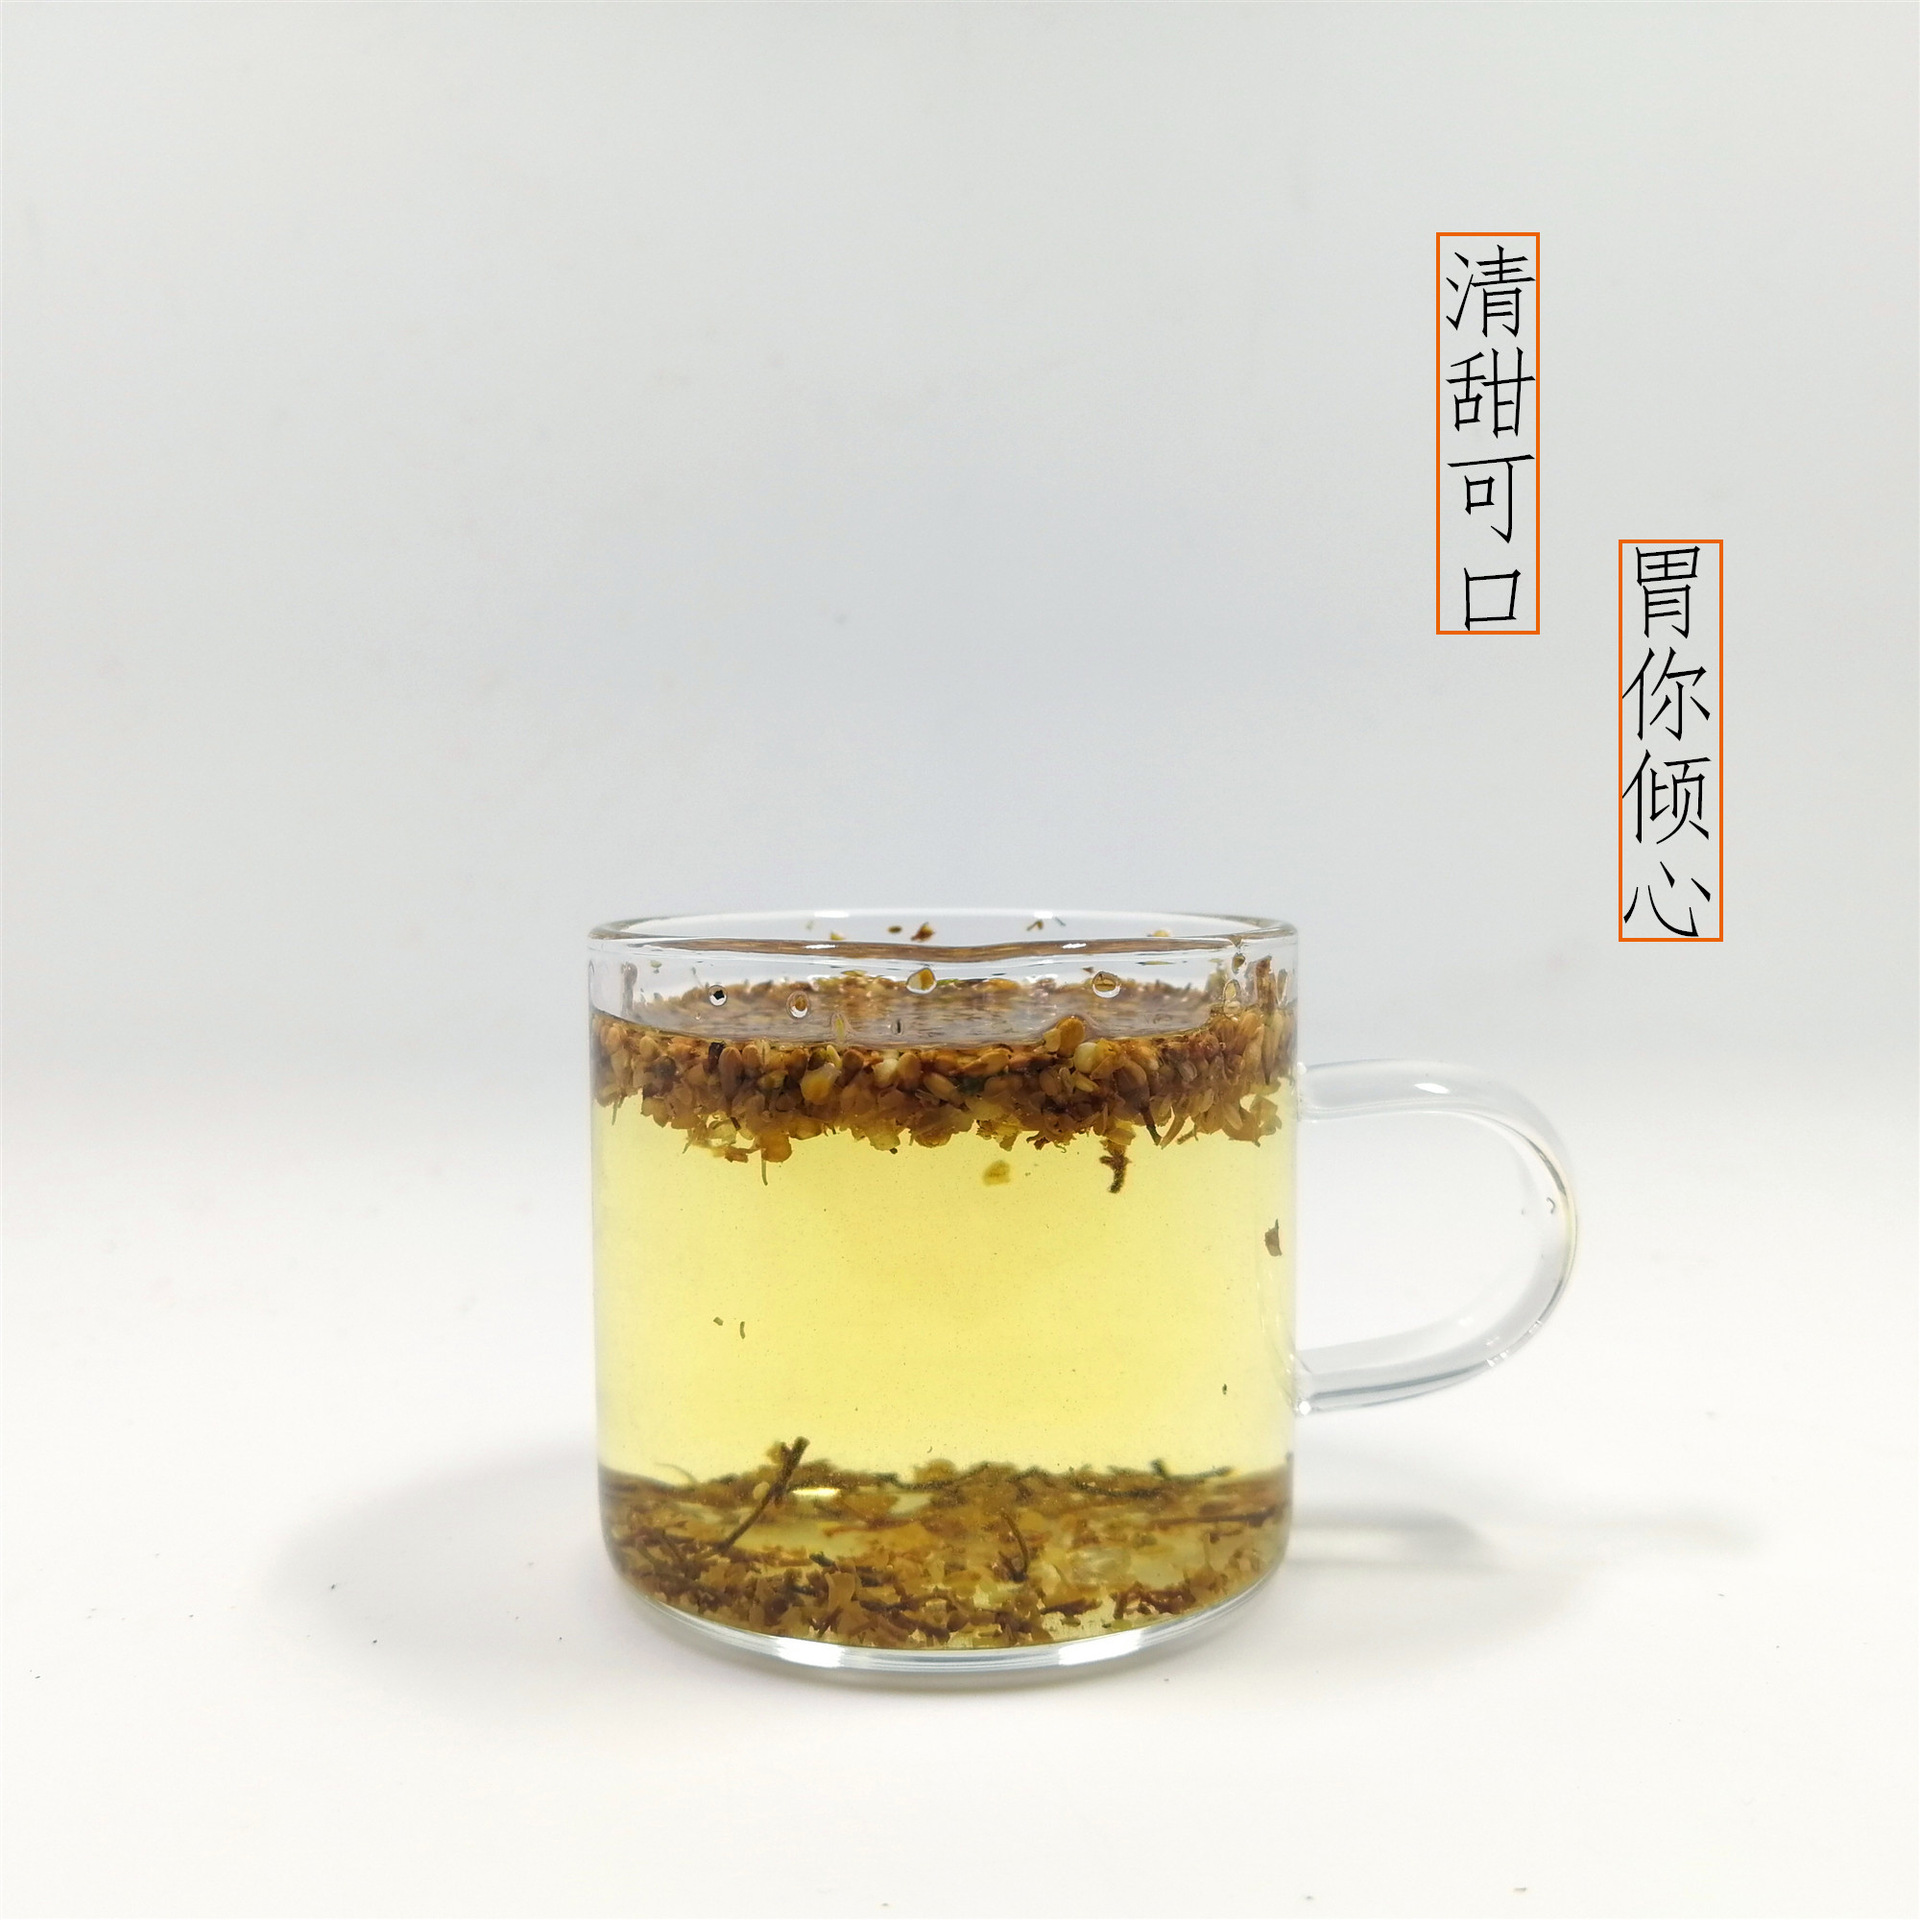 摄影——亦舒堂丁香茶-CND设计网,中国设计网络首选品牌